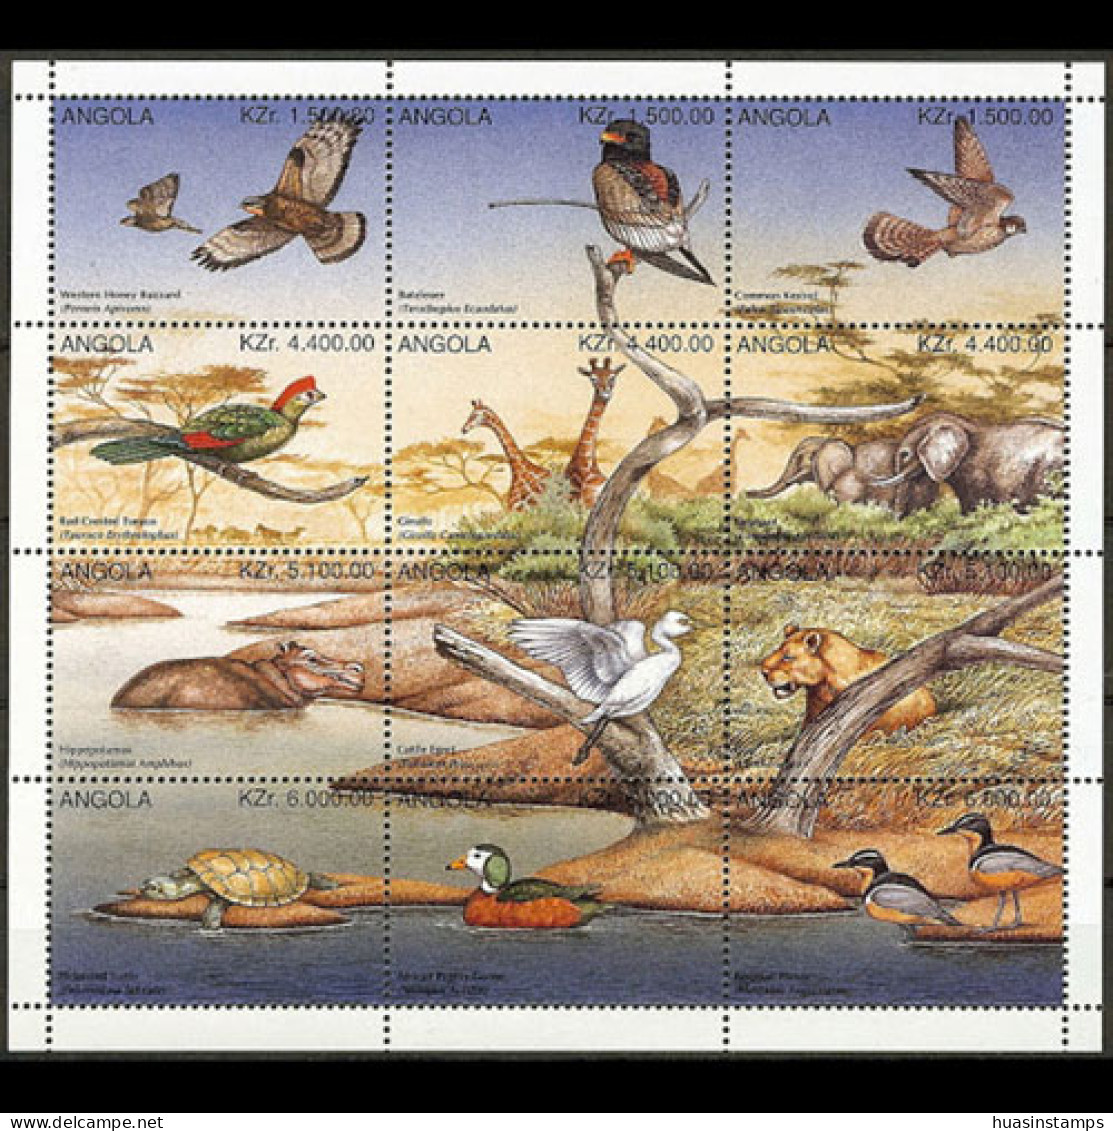 ANGOLA 1996 - Scott# 955 Sheet-Wildlife MNH - Angola